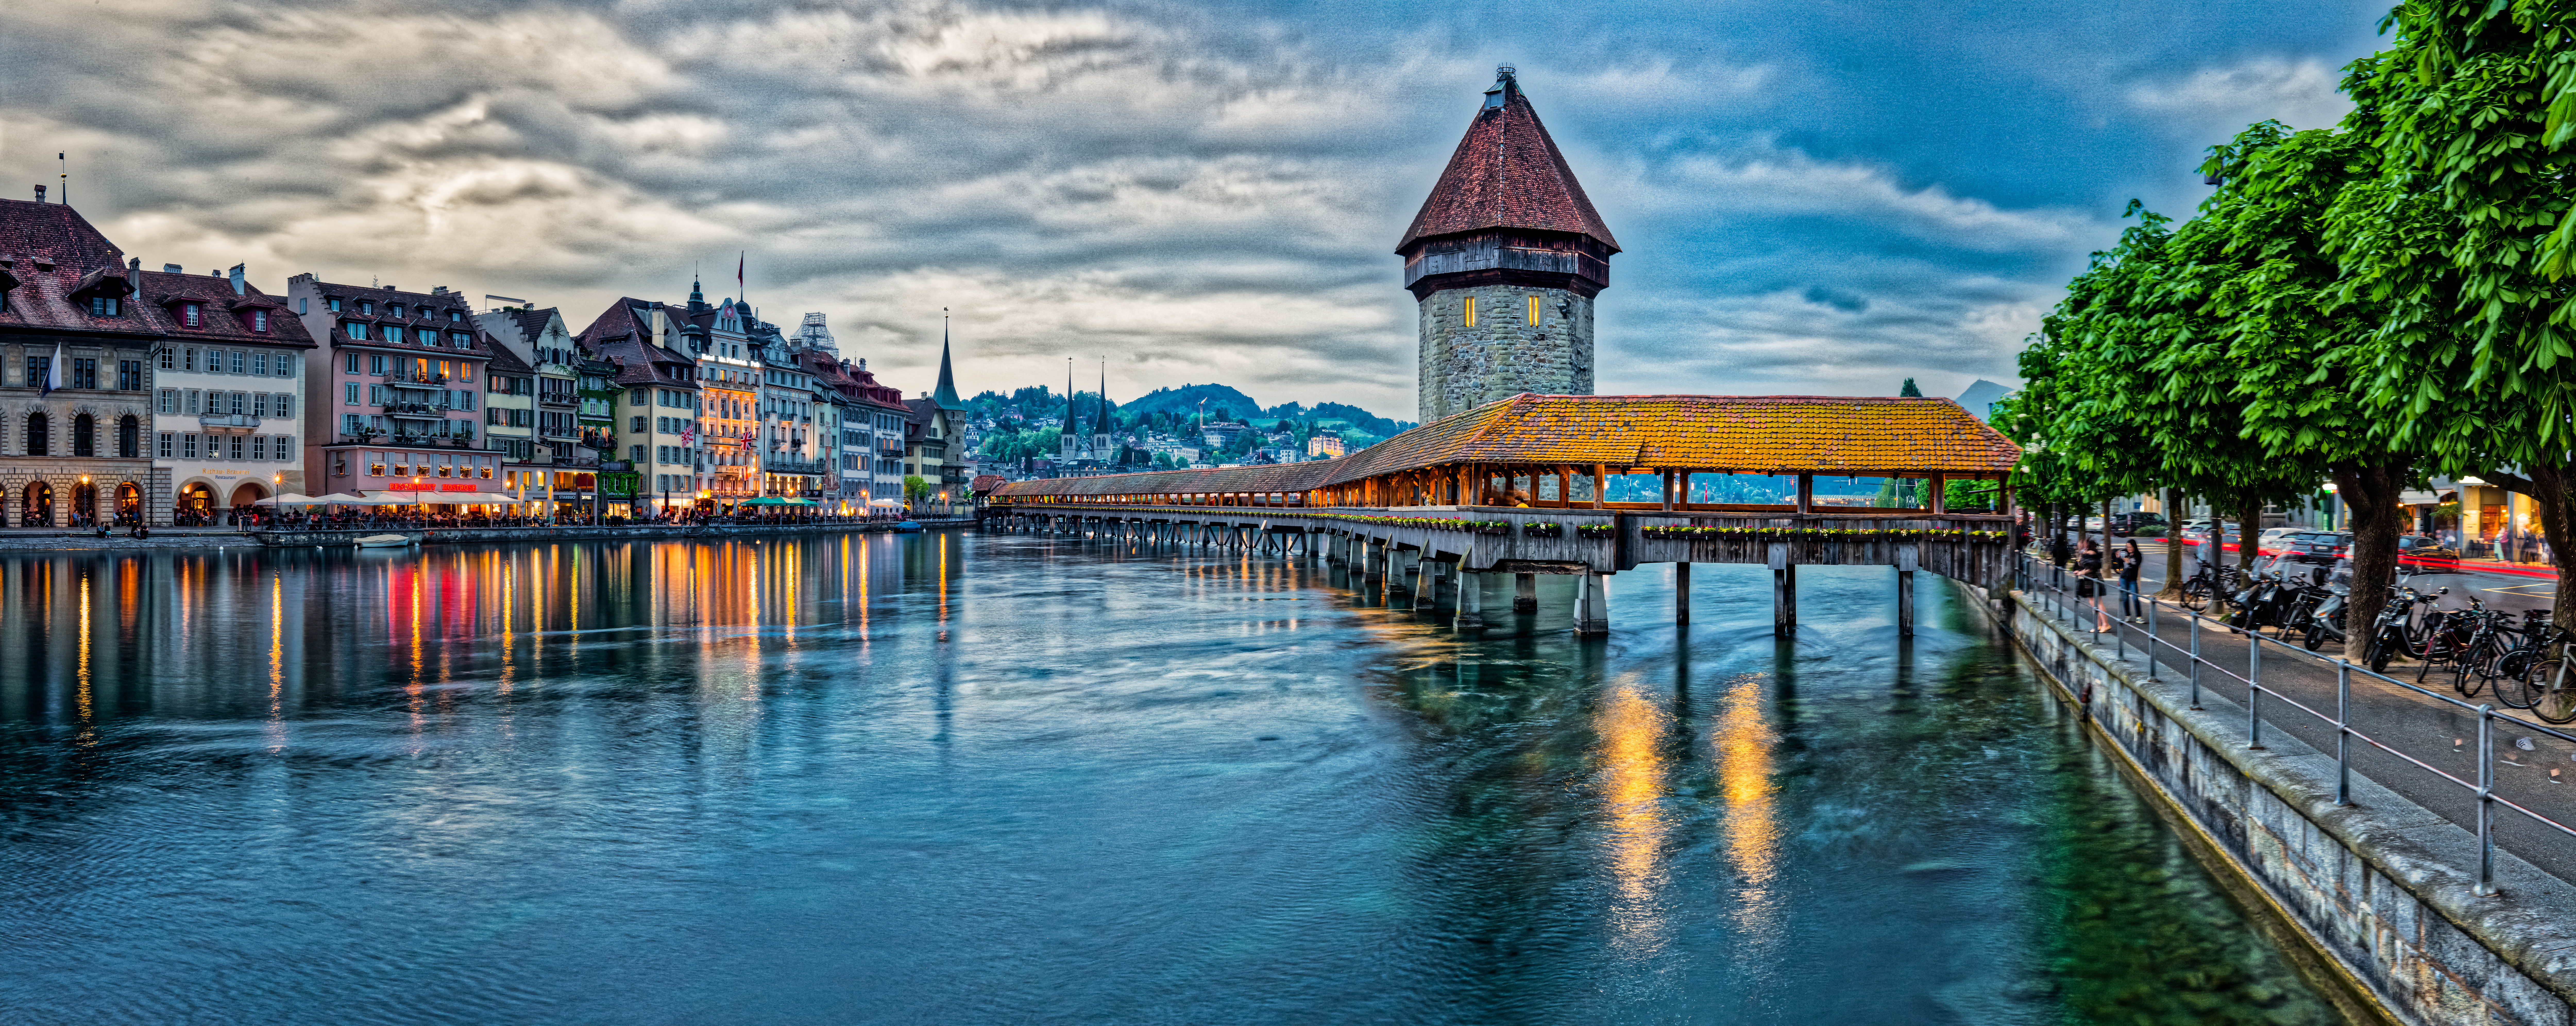 Обои Швейцария Часовенный мост Водонапорная башня и древний город Люцерн на рабочий стол